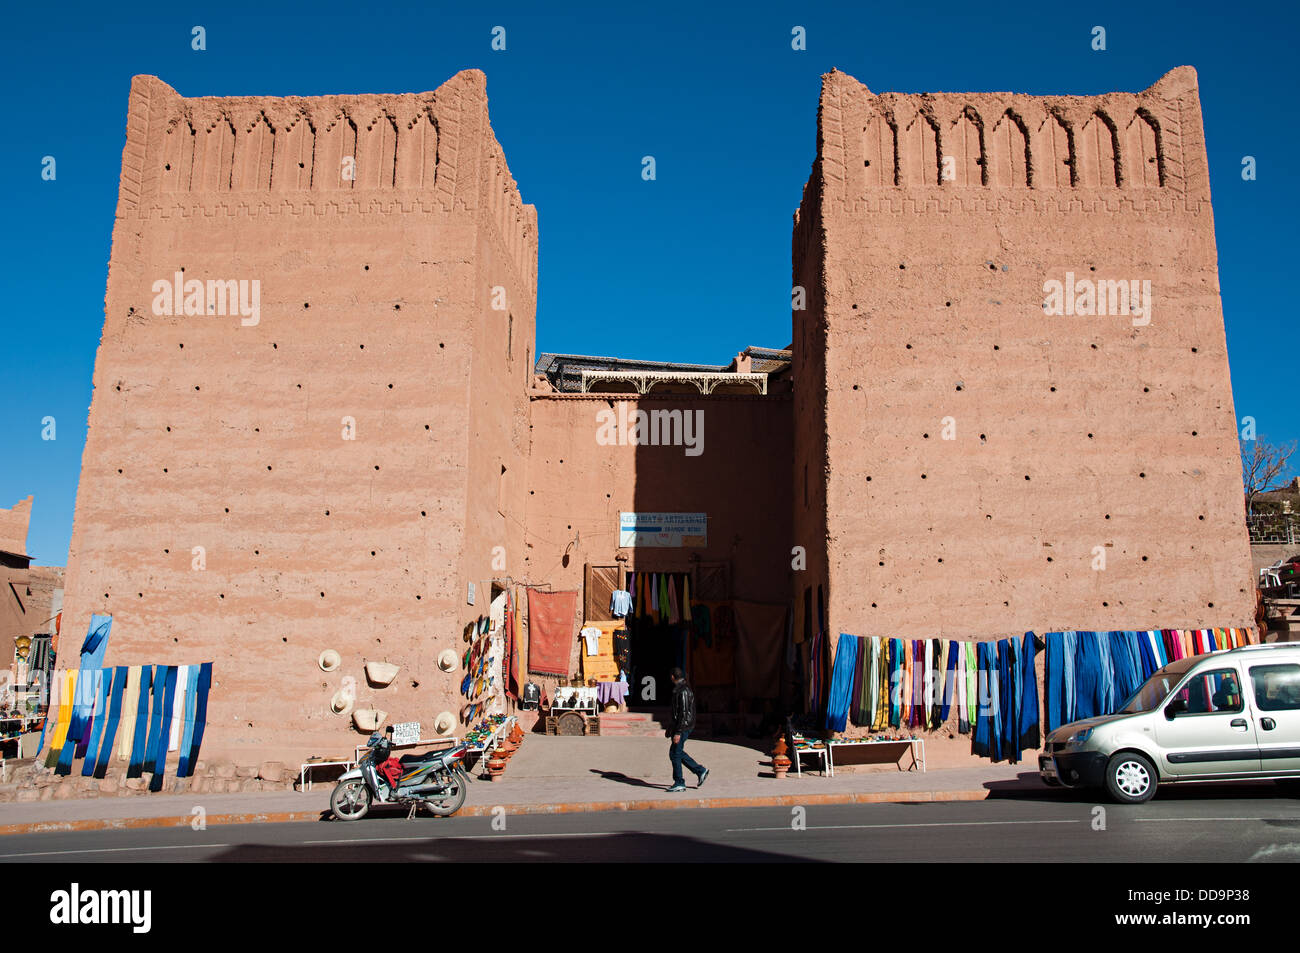 Magasins de souvenirs dans un traditionnel bâtiment adobe en face de Kasbah de Taourirt, Ouarzazate, Maroc Banque D'Images